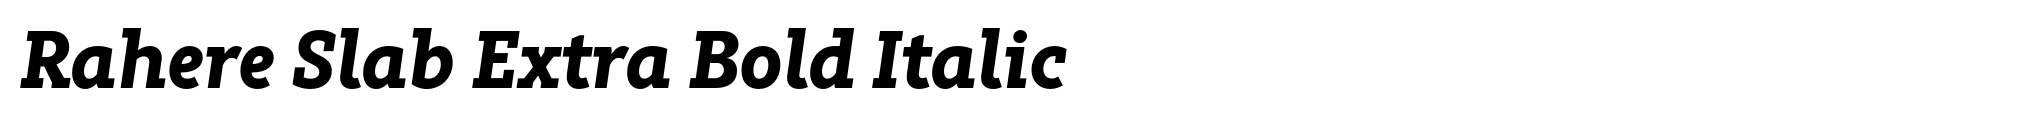 Rahere Slab Extra Bold Italic image